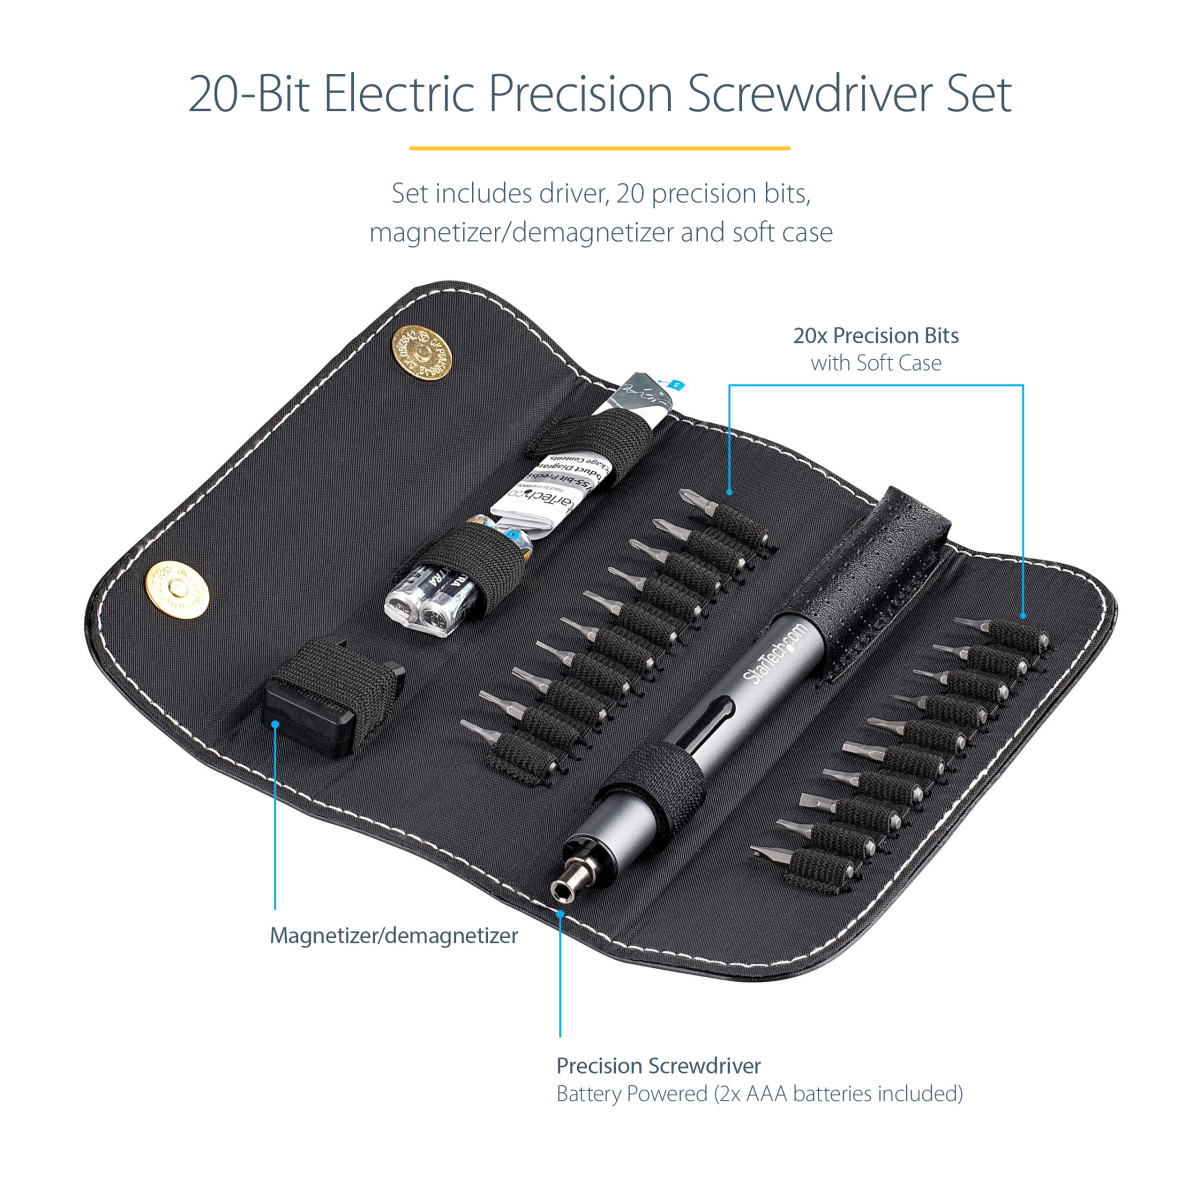 20-Bit Electric Precision Screwdriver